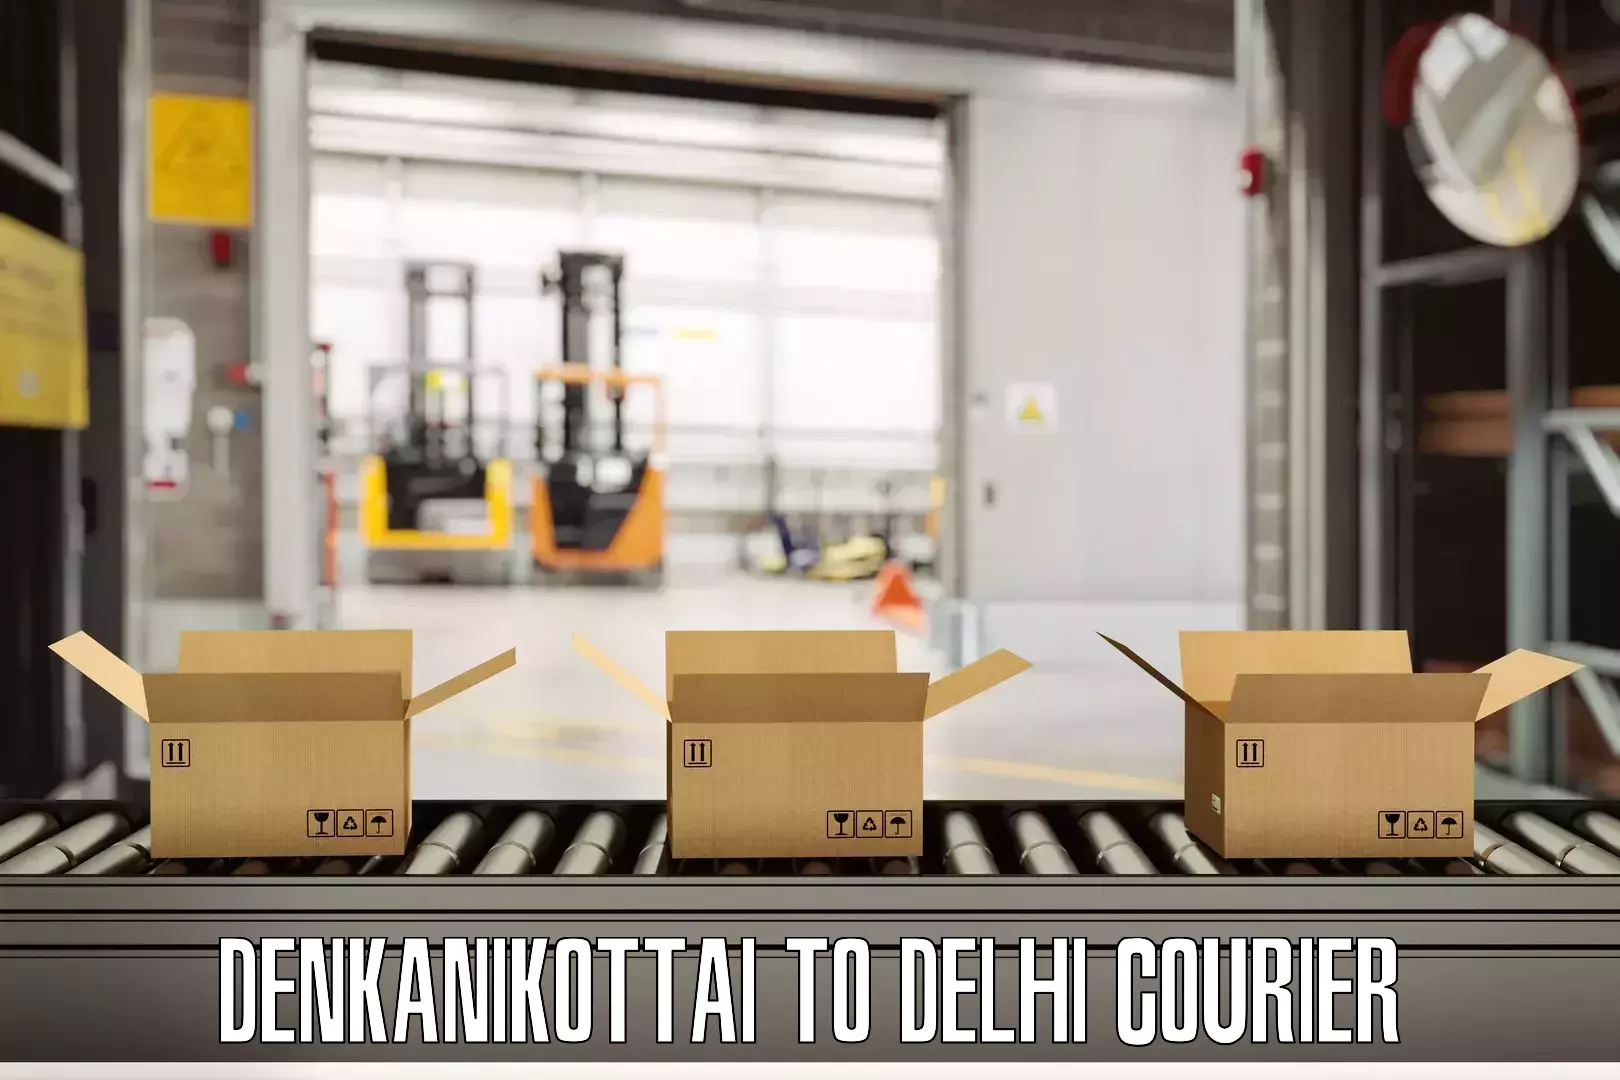 Baggage courier FAQs Denkanikottai to Indraprastha